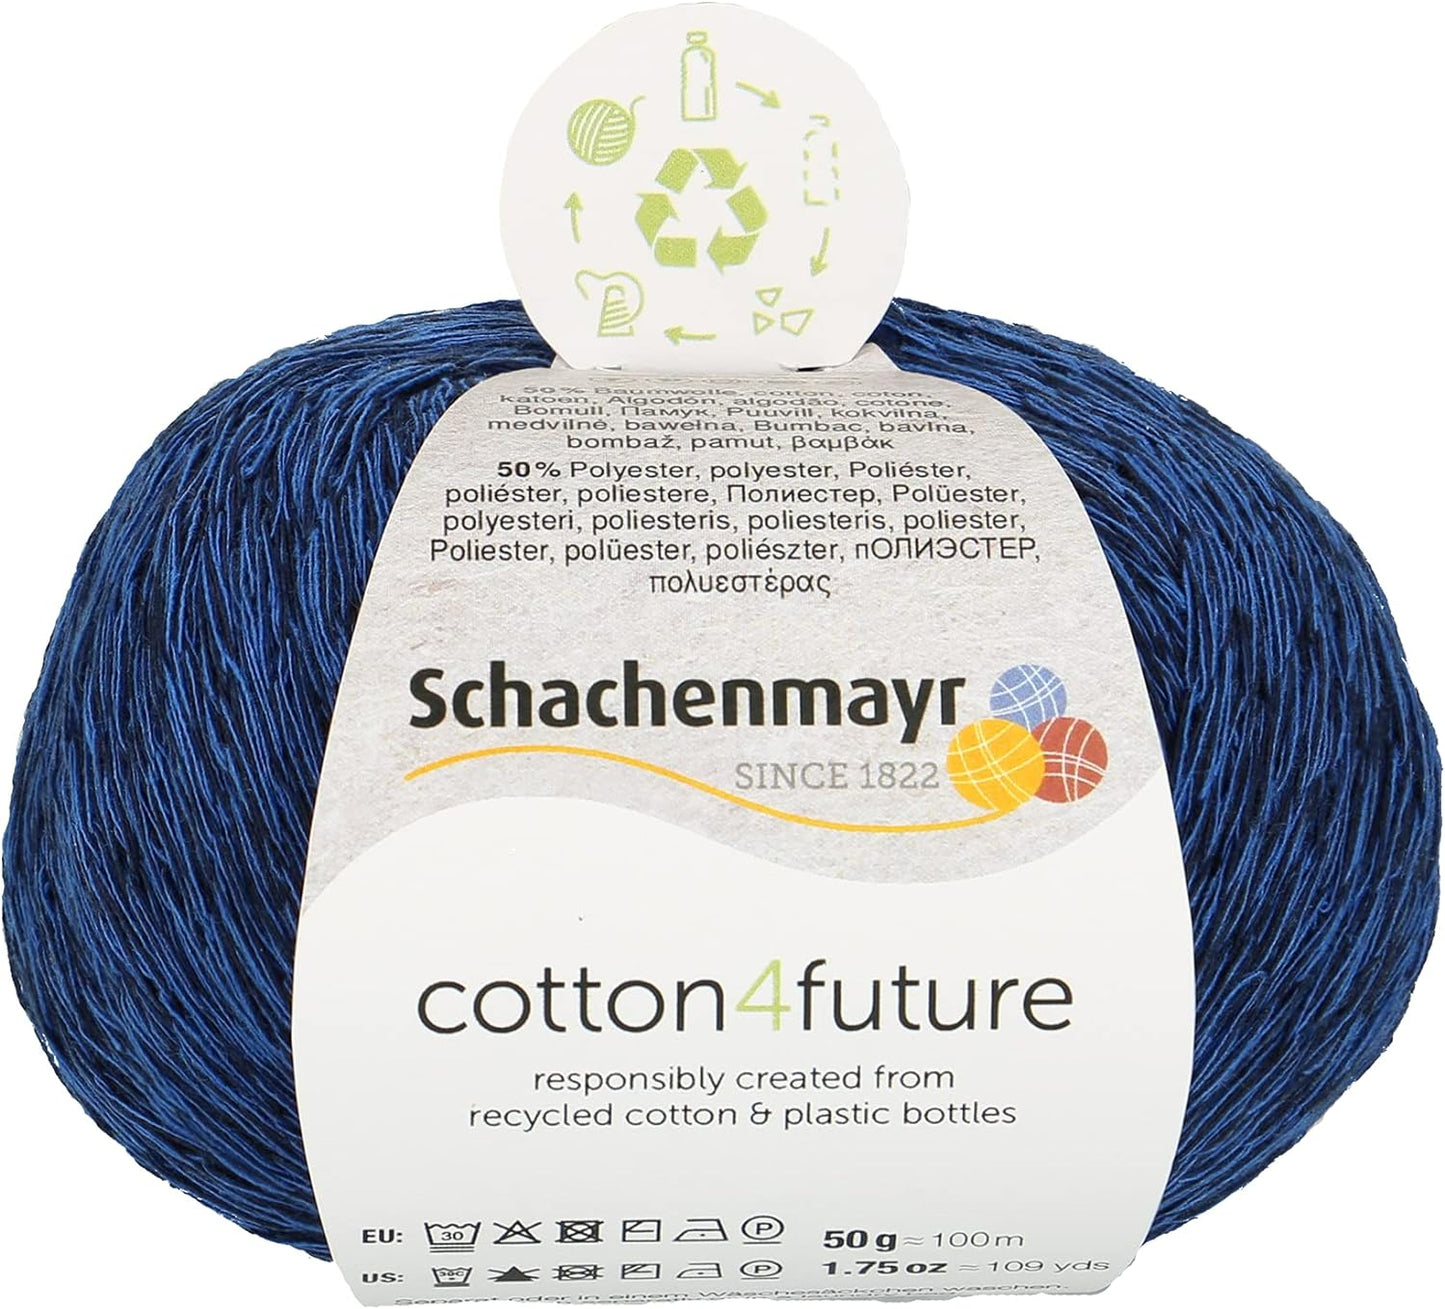 Cotton4future von Schachenmayr